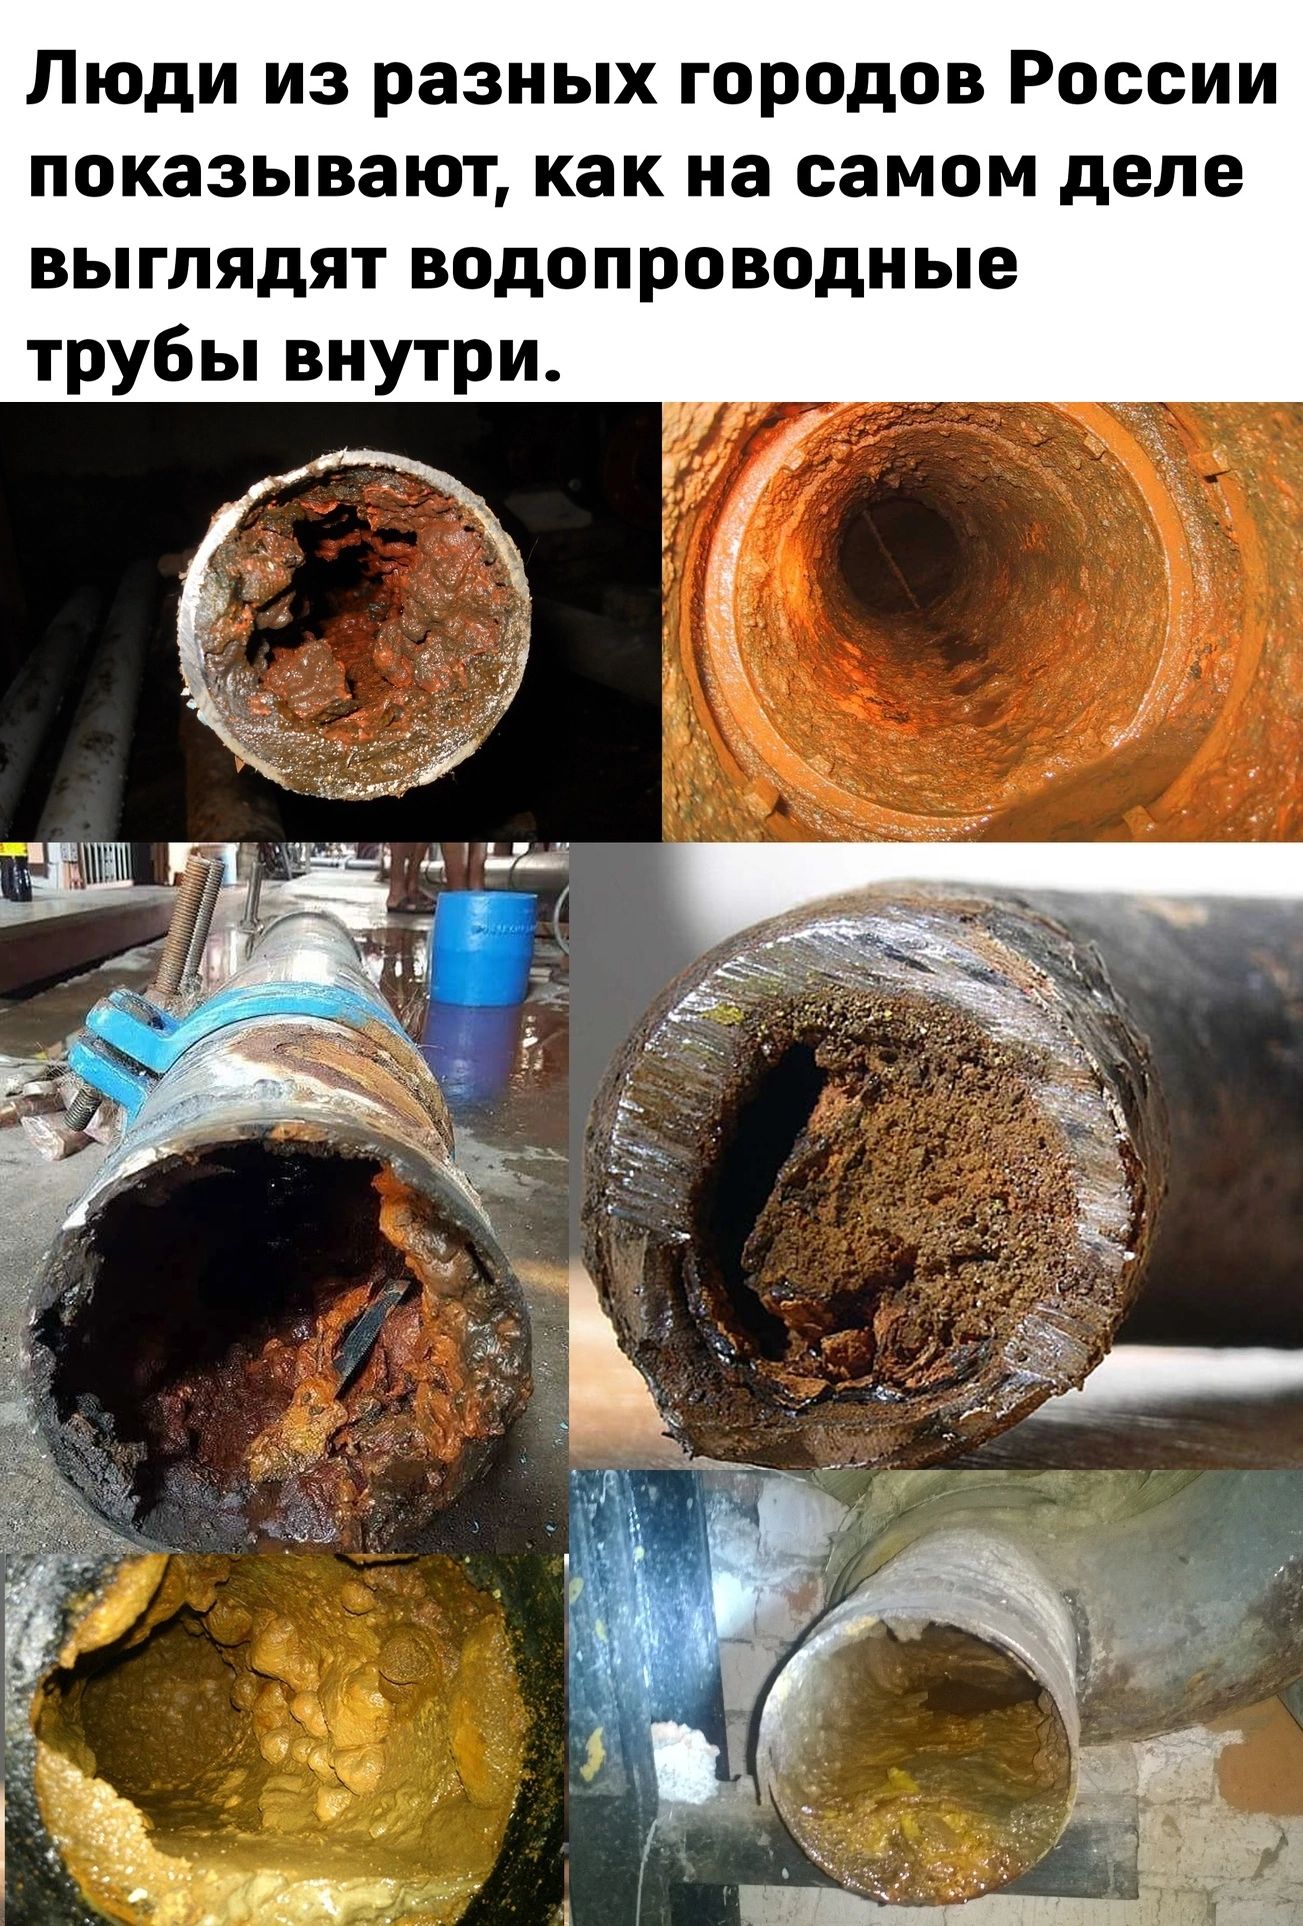 Люди из разных городов России показывают как на самом деле выглядят водопроводные трубы внутри